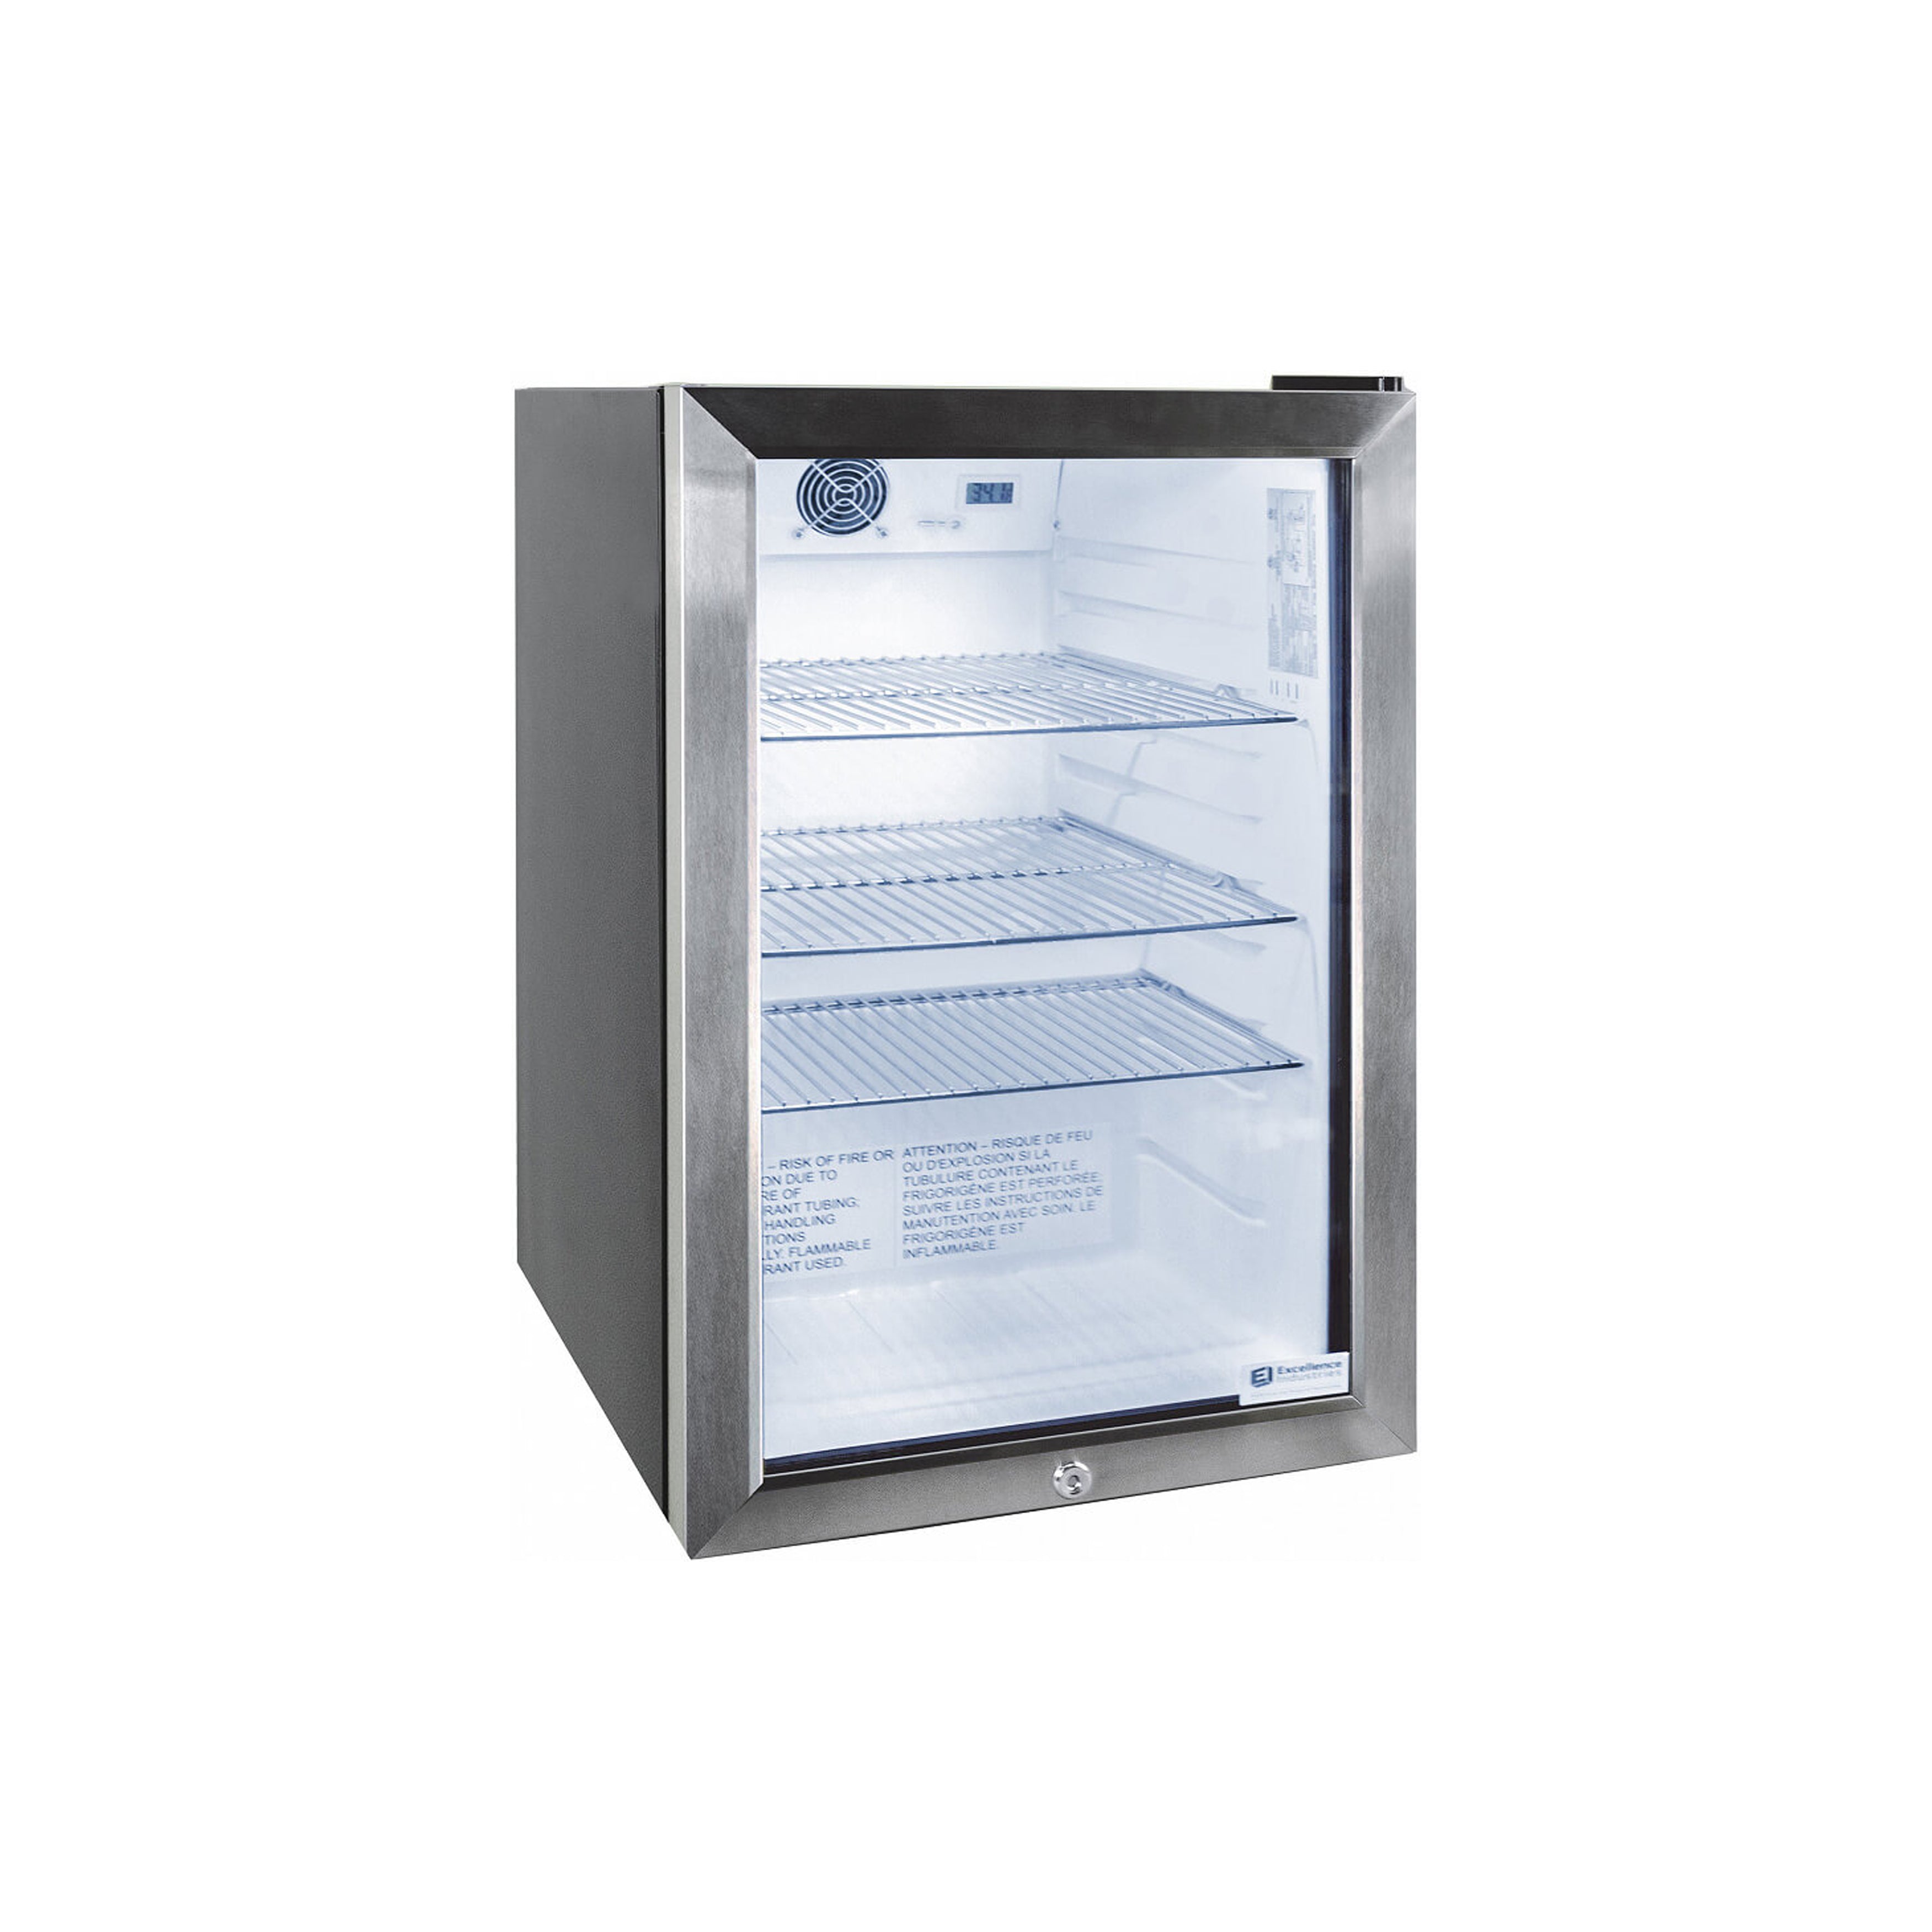 Excellence Industries - EMM-3HC, 17" Commercial 1 Swing Glass Door Countertop Refrigerated Merchandiser 2.5 cu.ft.